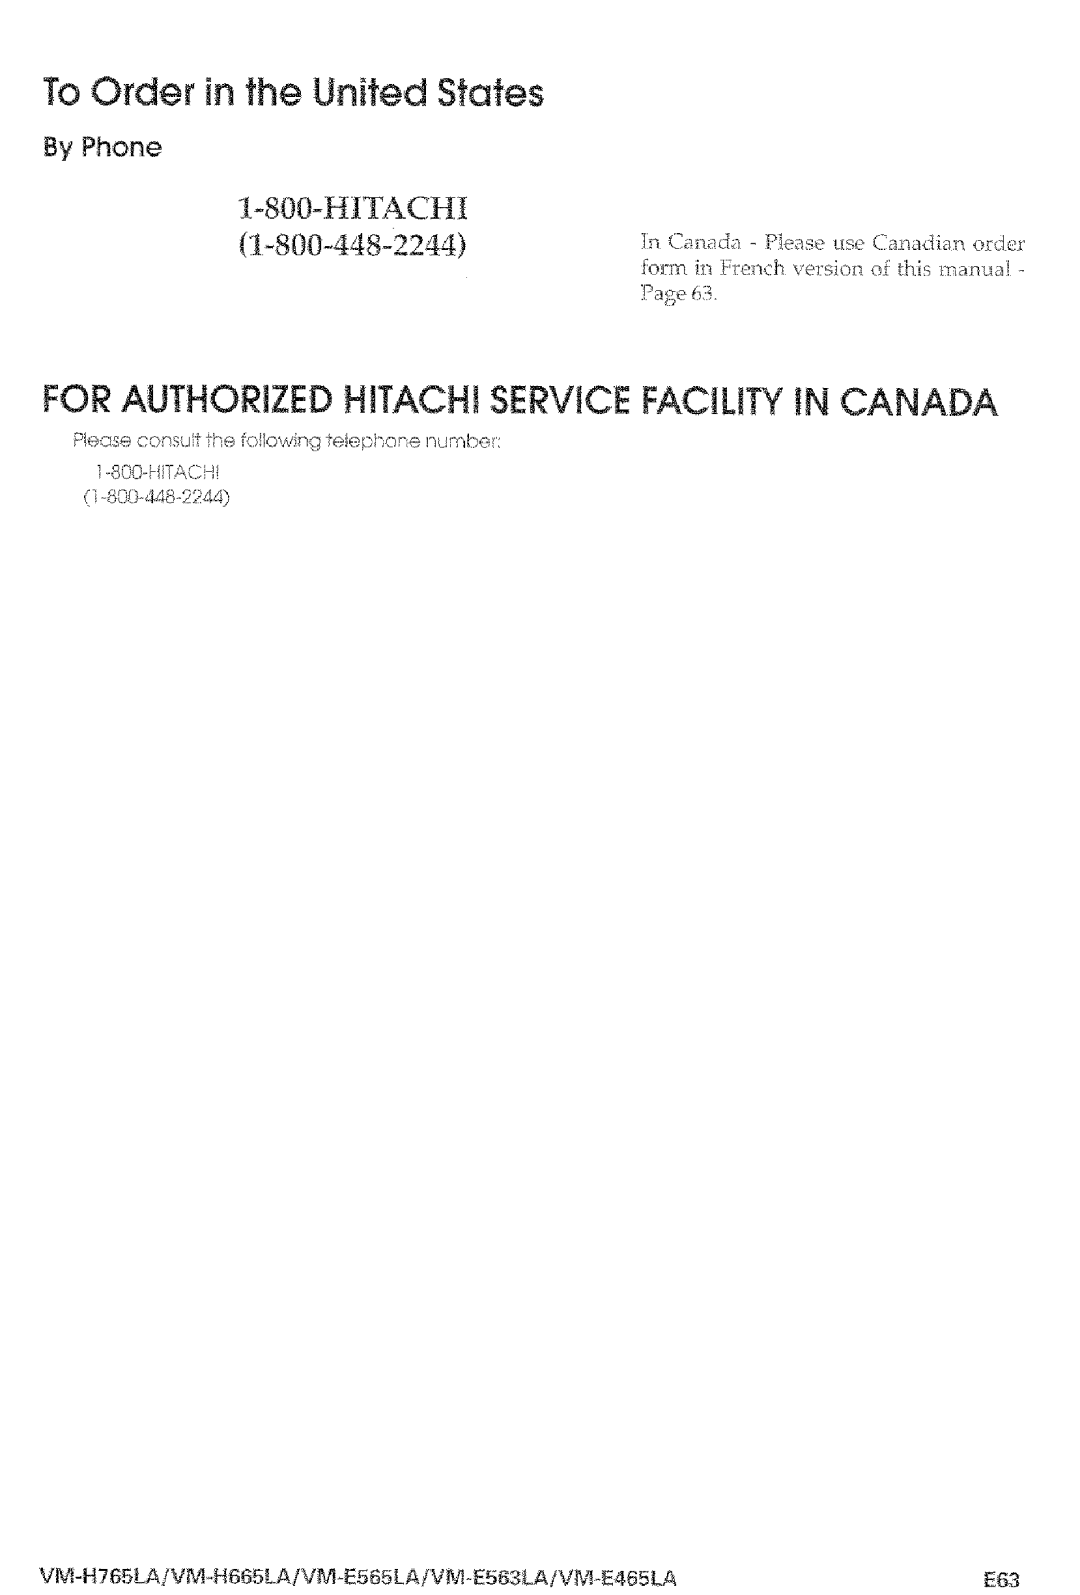 Hitachi VM-E565LA, VM-E465LA manual For Authorized HITACHi Service Facility iN Canada, By Phone 